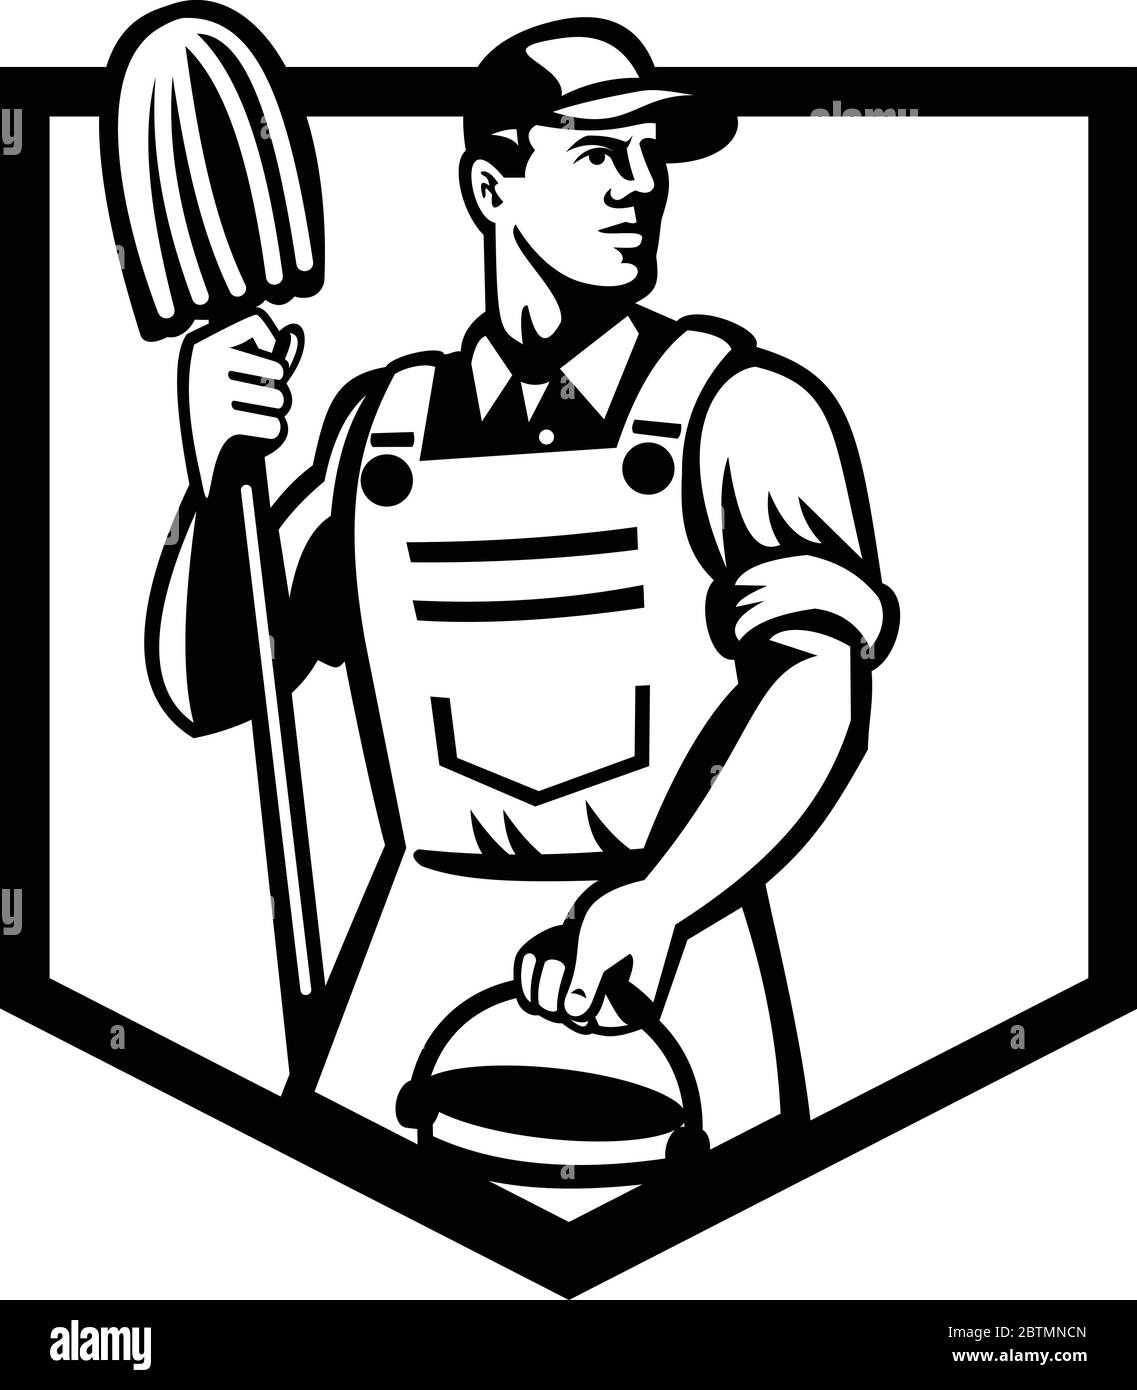 Illustration d'un ouvrier de nettoyage de concierge tenant une vadrouille et un seau d'eau vu de l'angle bas à l'intérieur de la protection fait dans le style rétro noir et blanc Illustration de Vecteur